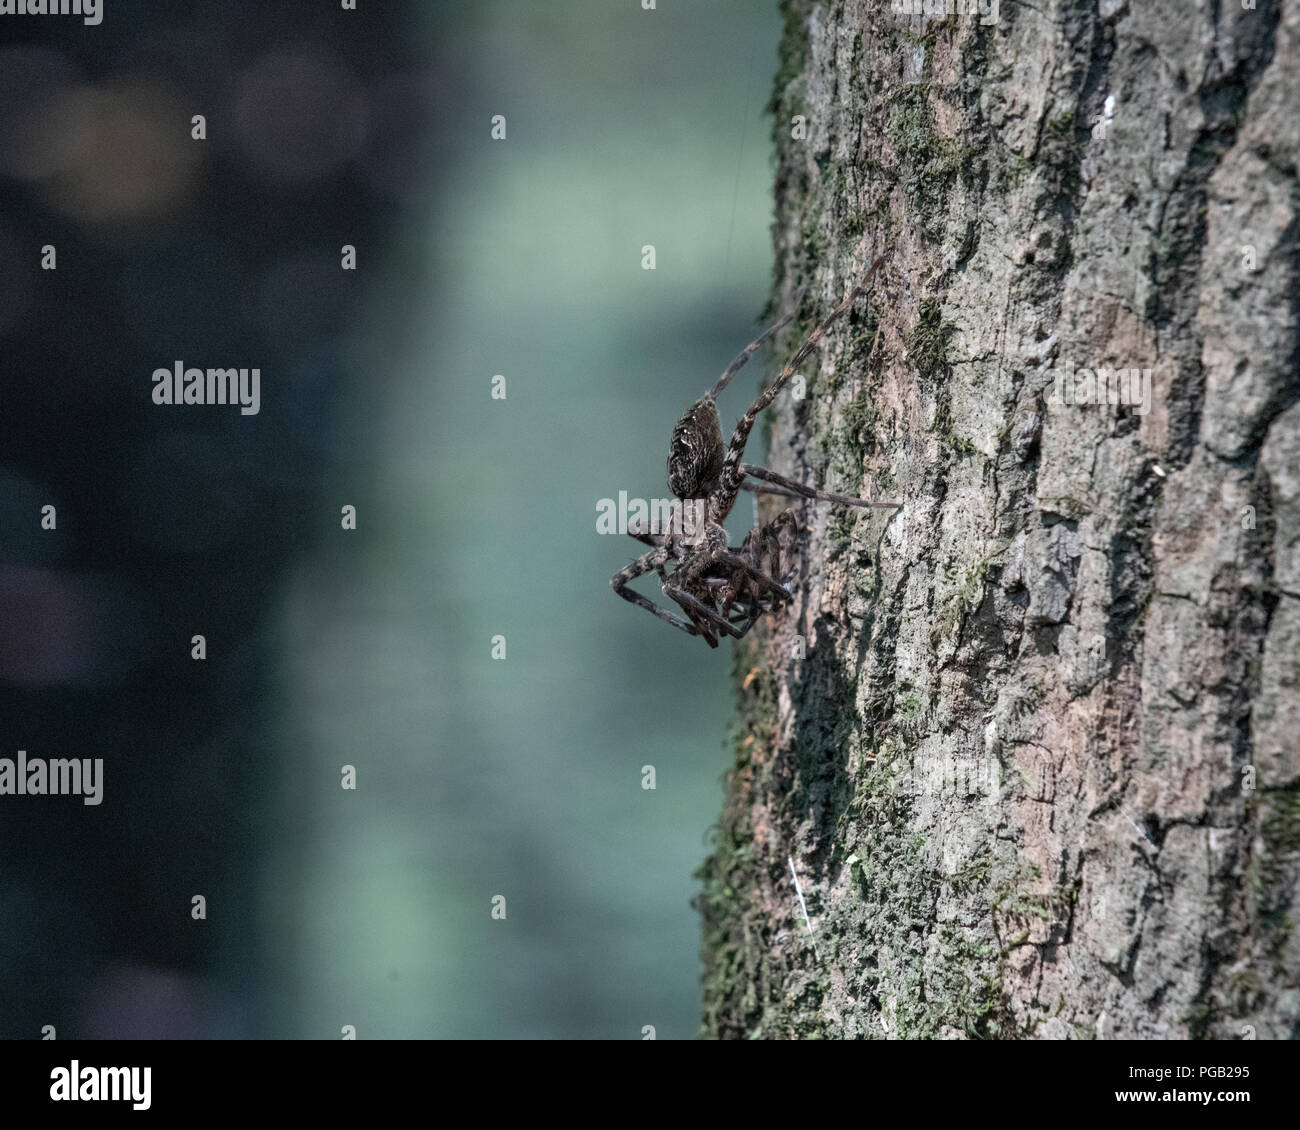 Juvenile whitebanded Angeln spider wartet auf Beute auf einen Baum in Shalotte North Carolina Usa Stockfoto